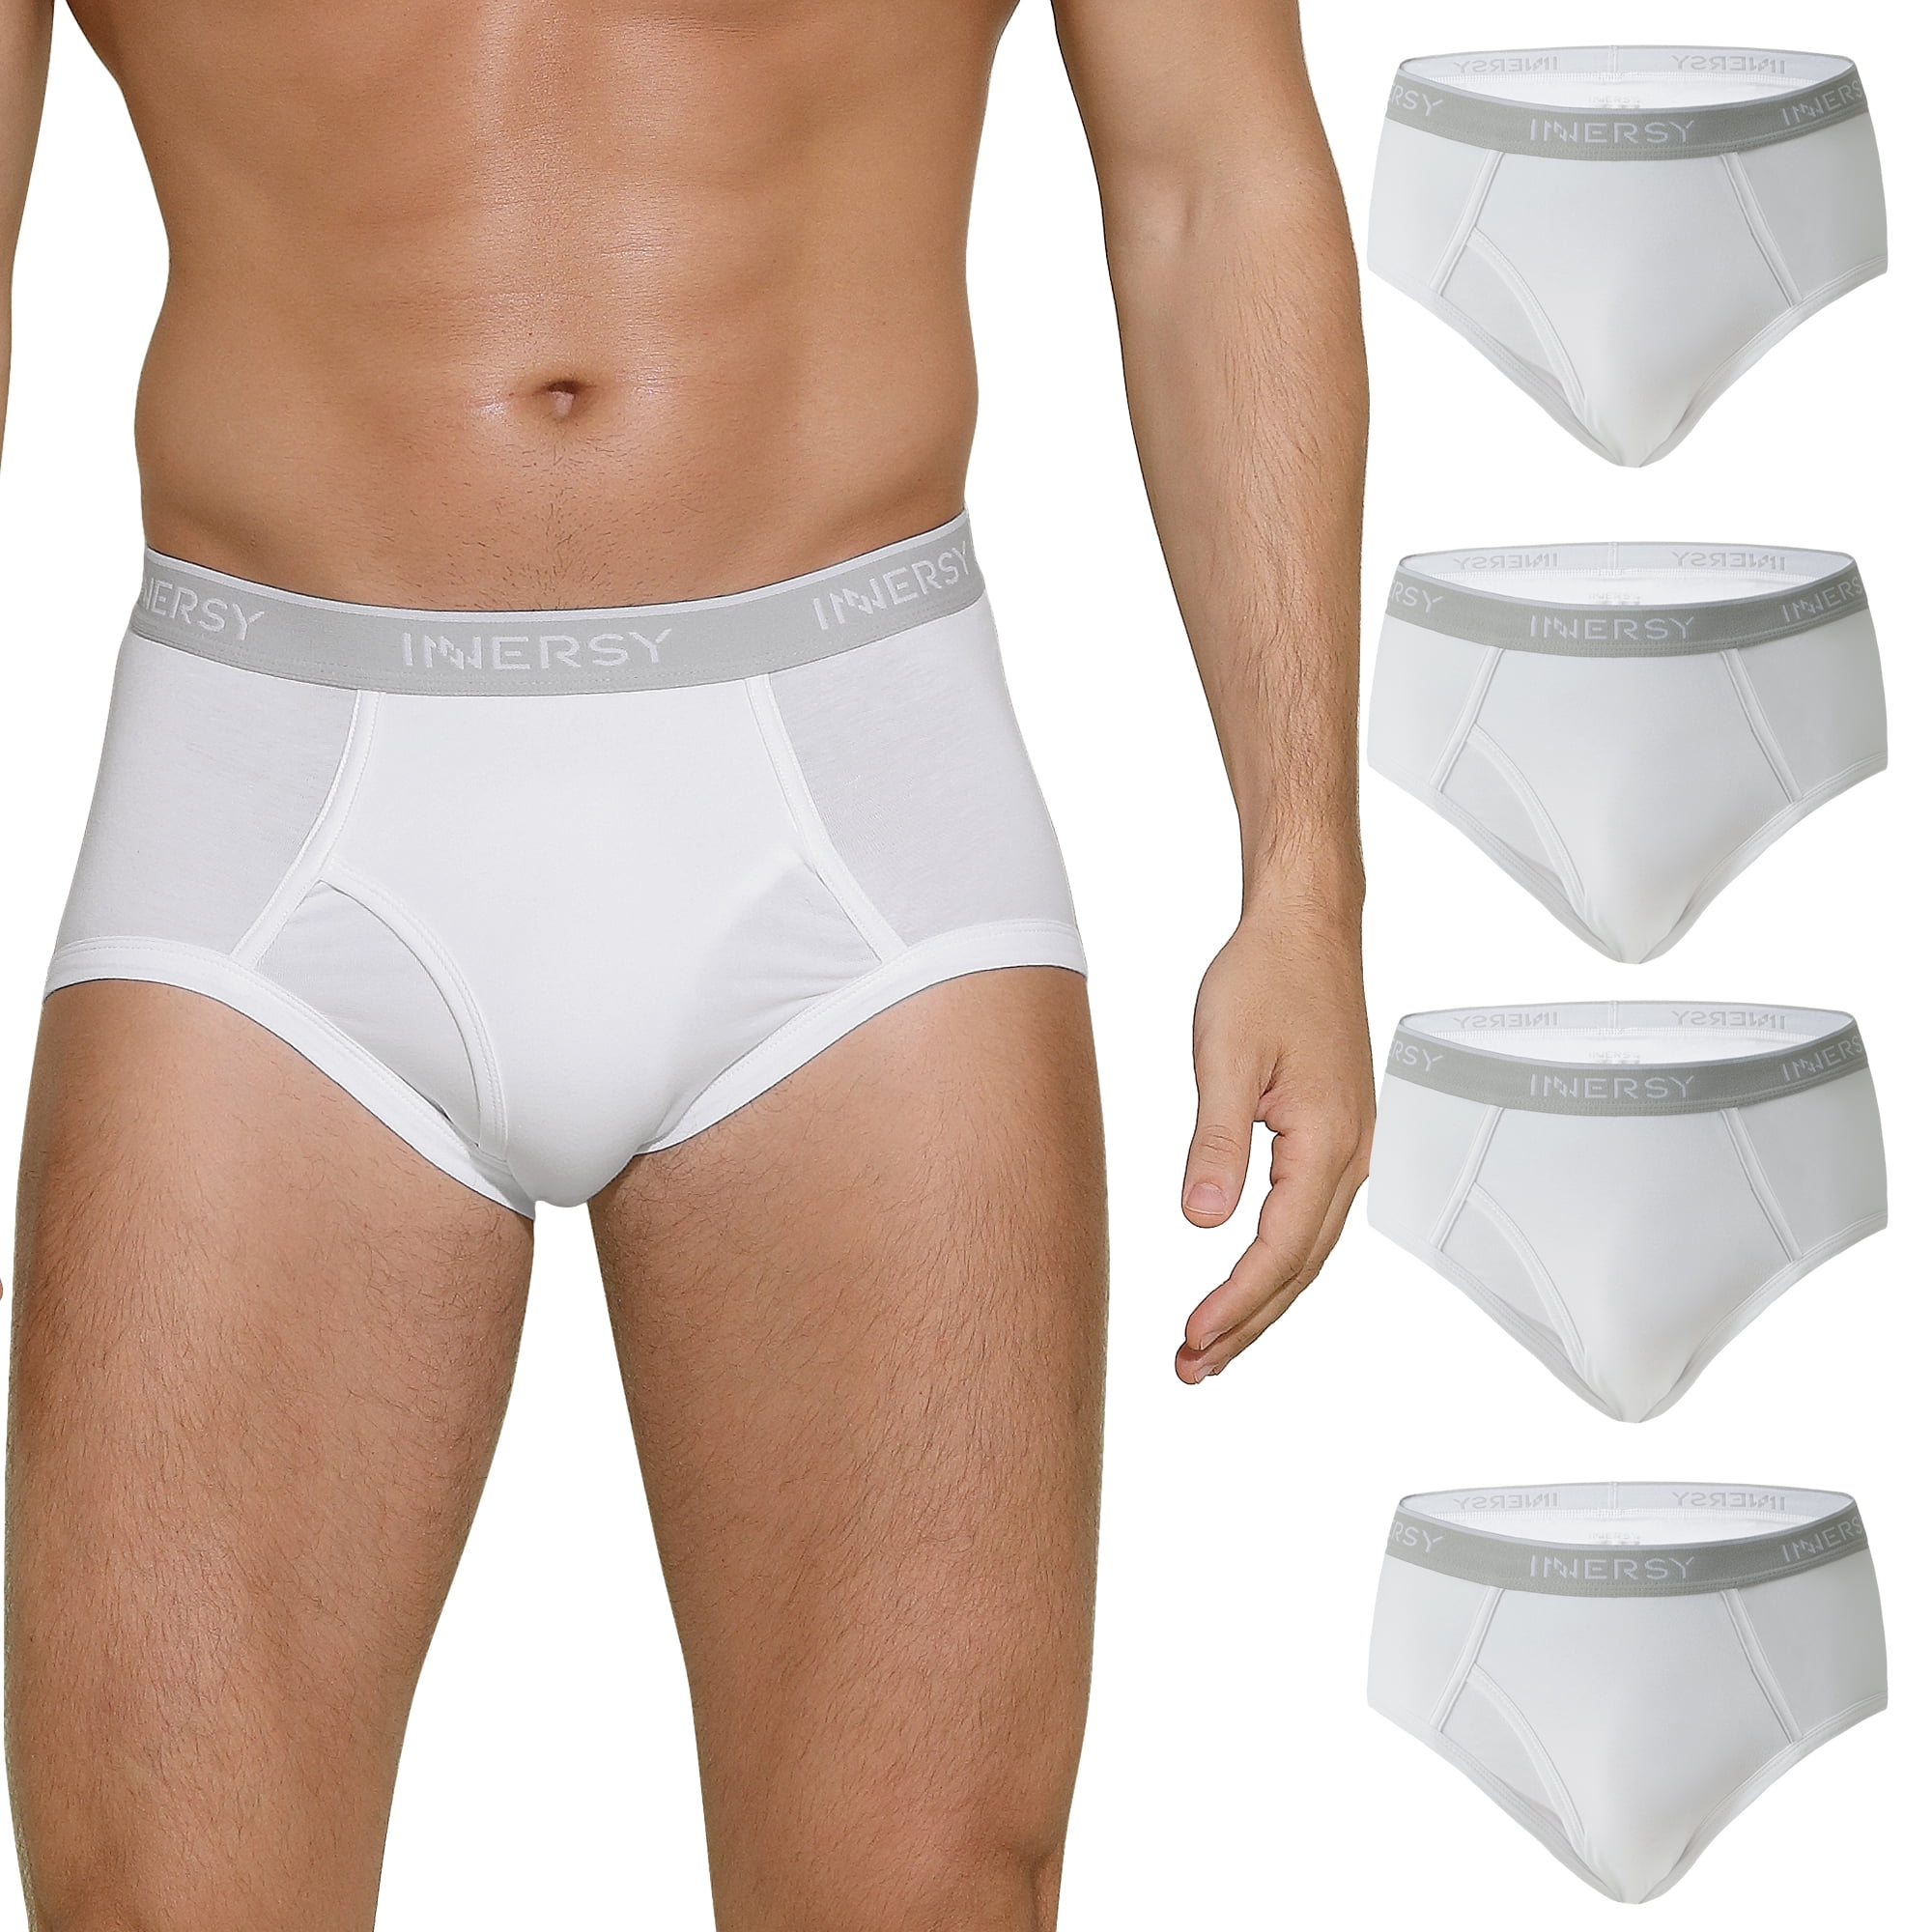 Jockey® Y-Front Underwear for Men: Briefs, Pants & More – JOCKEY UK